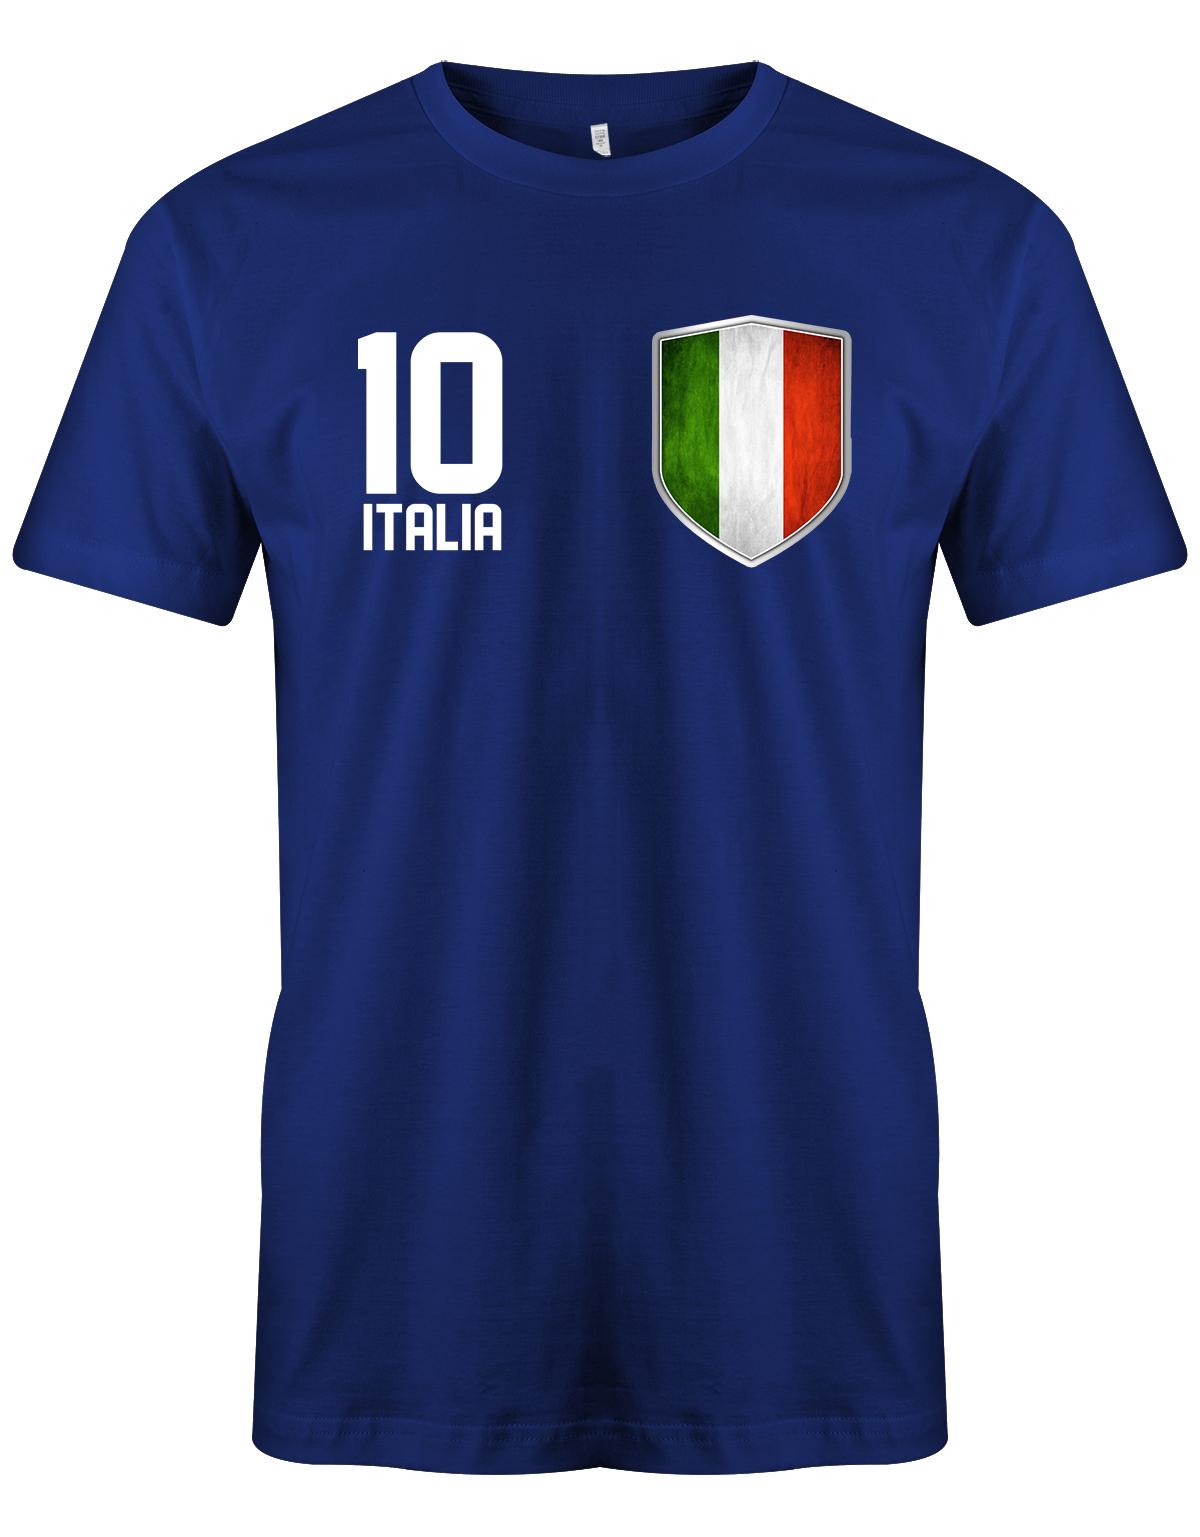 Italia-10-Wappen-Herren-Shirt-Royalblau